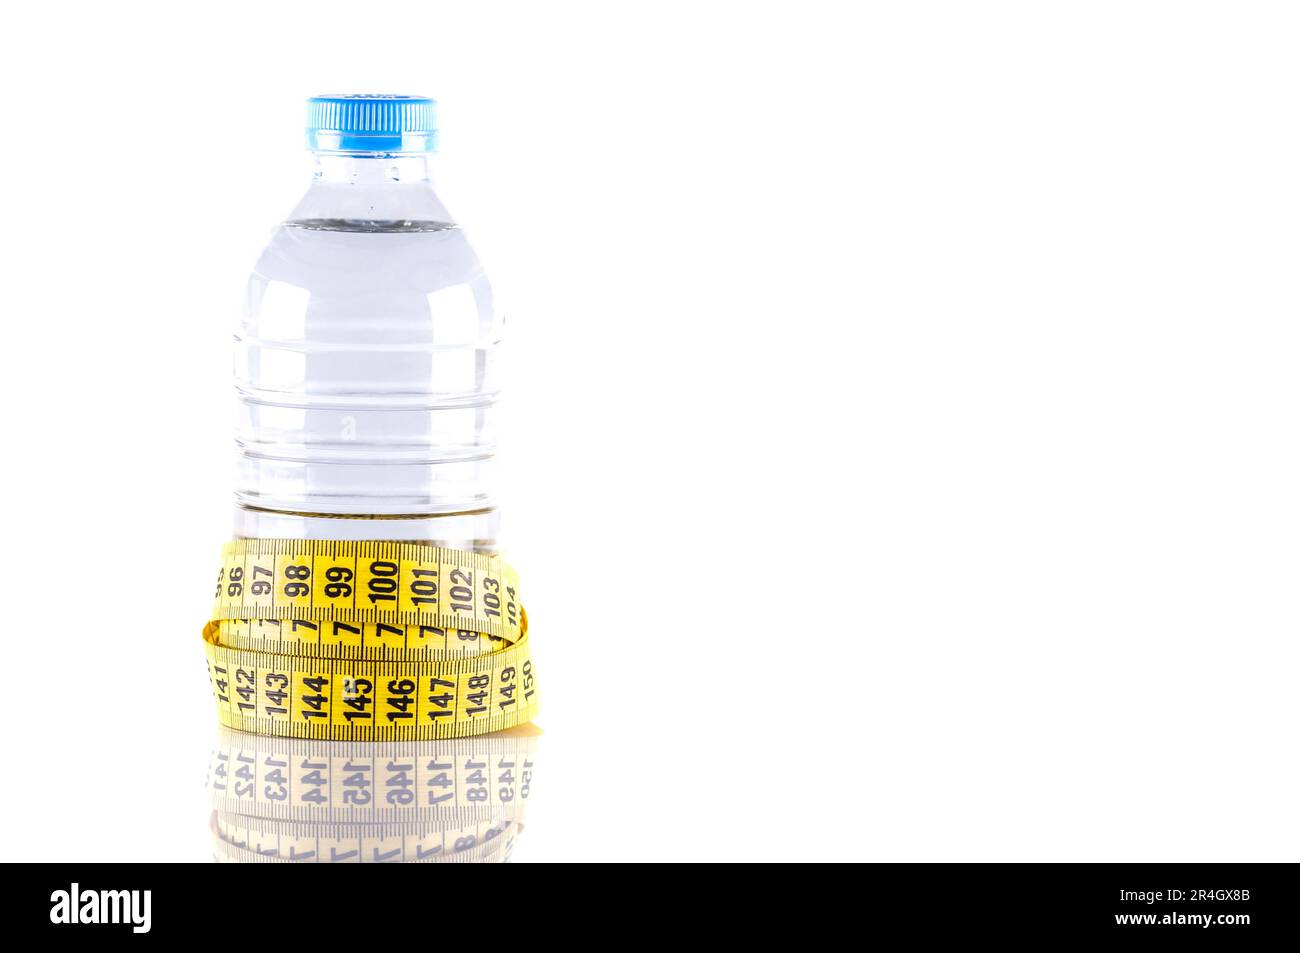 Wasserflasche, isolierte Kunststoffwasserflasche mit Seitenansicht, umgeben von gelbem Band oder Maßband auf weiß mit Reflexion. Fit, gesund Stockfoto